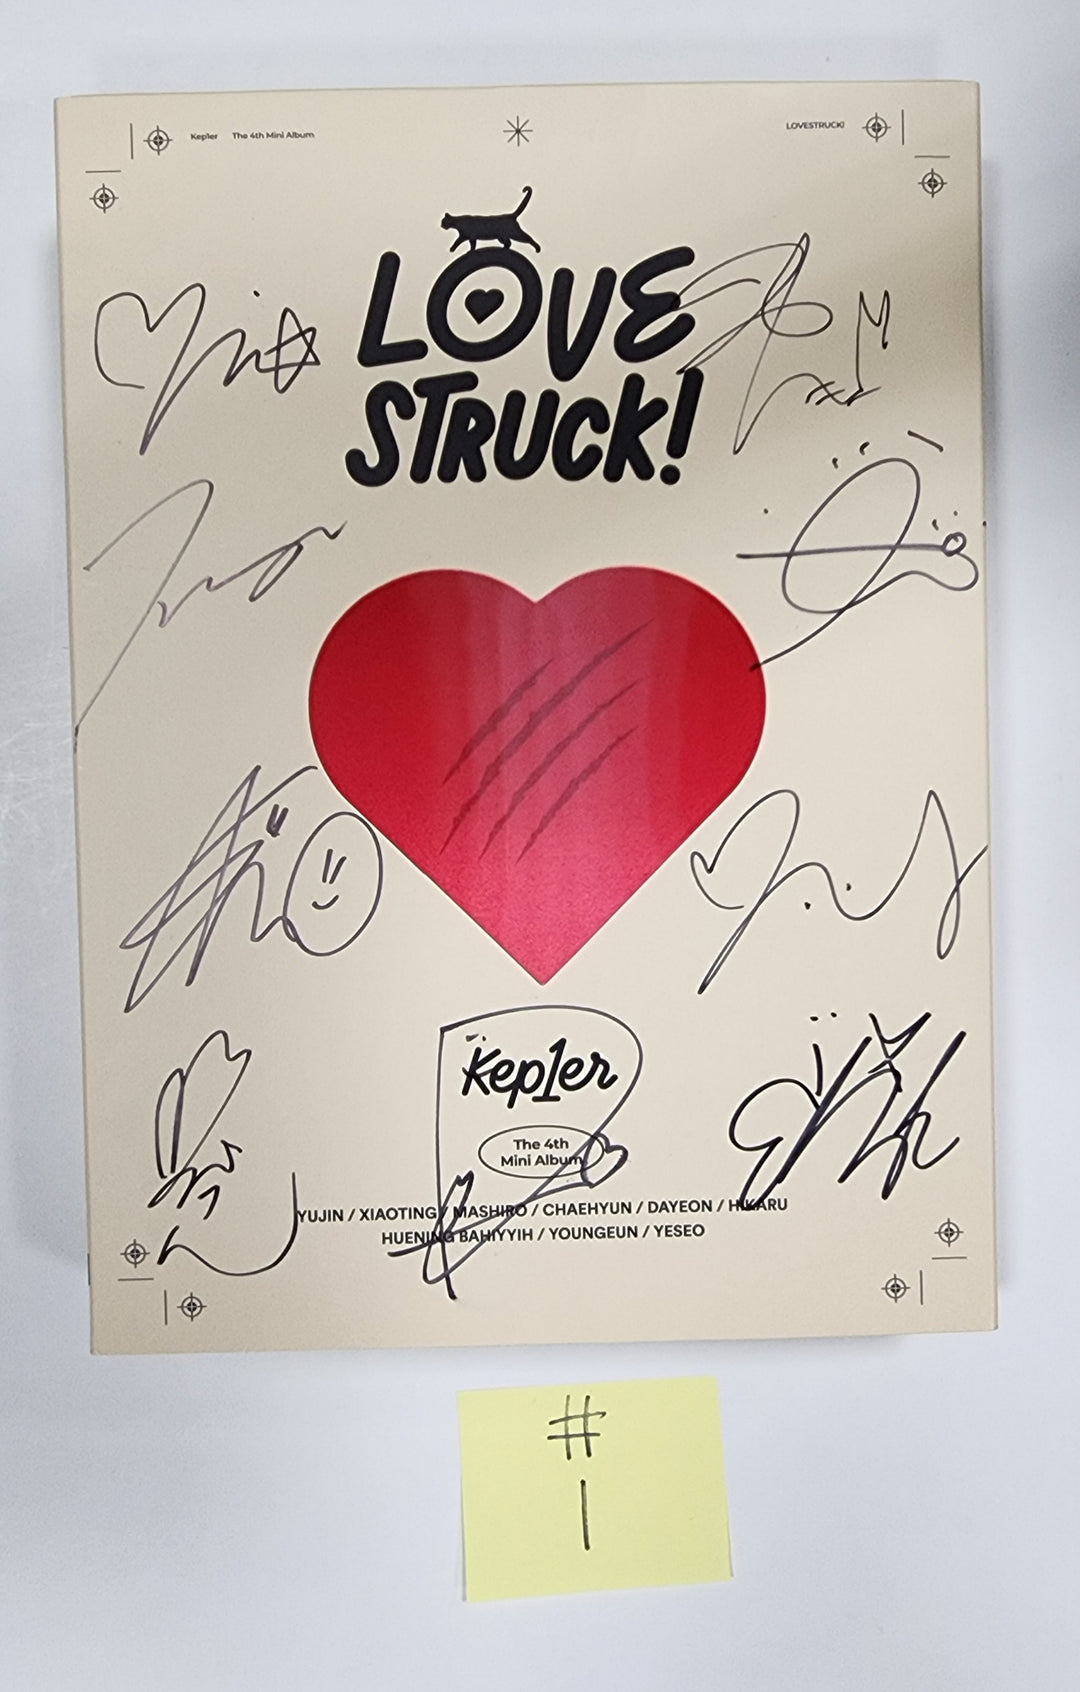 Kep1er "LOVESTRUCK!" - Hand Autographed(Signed) Promo Album